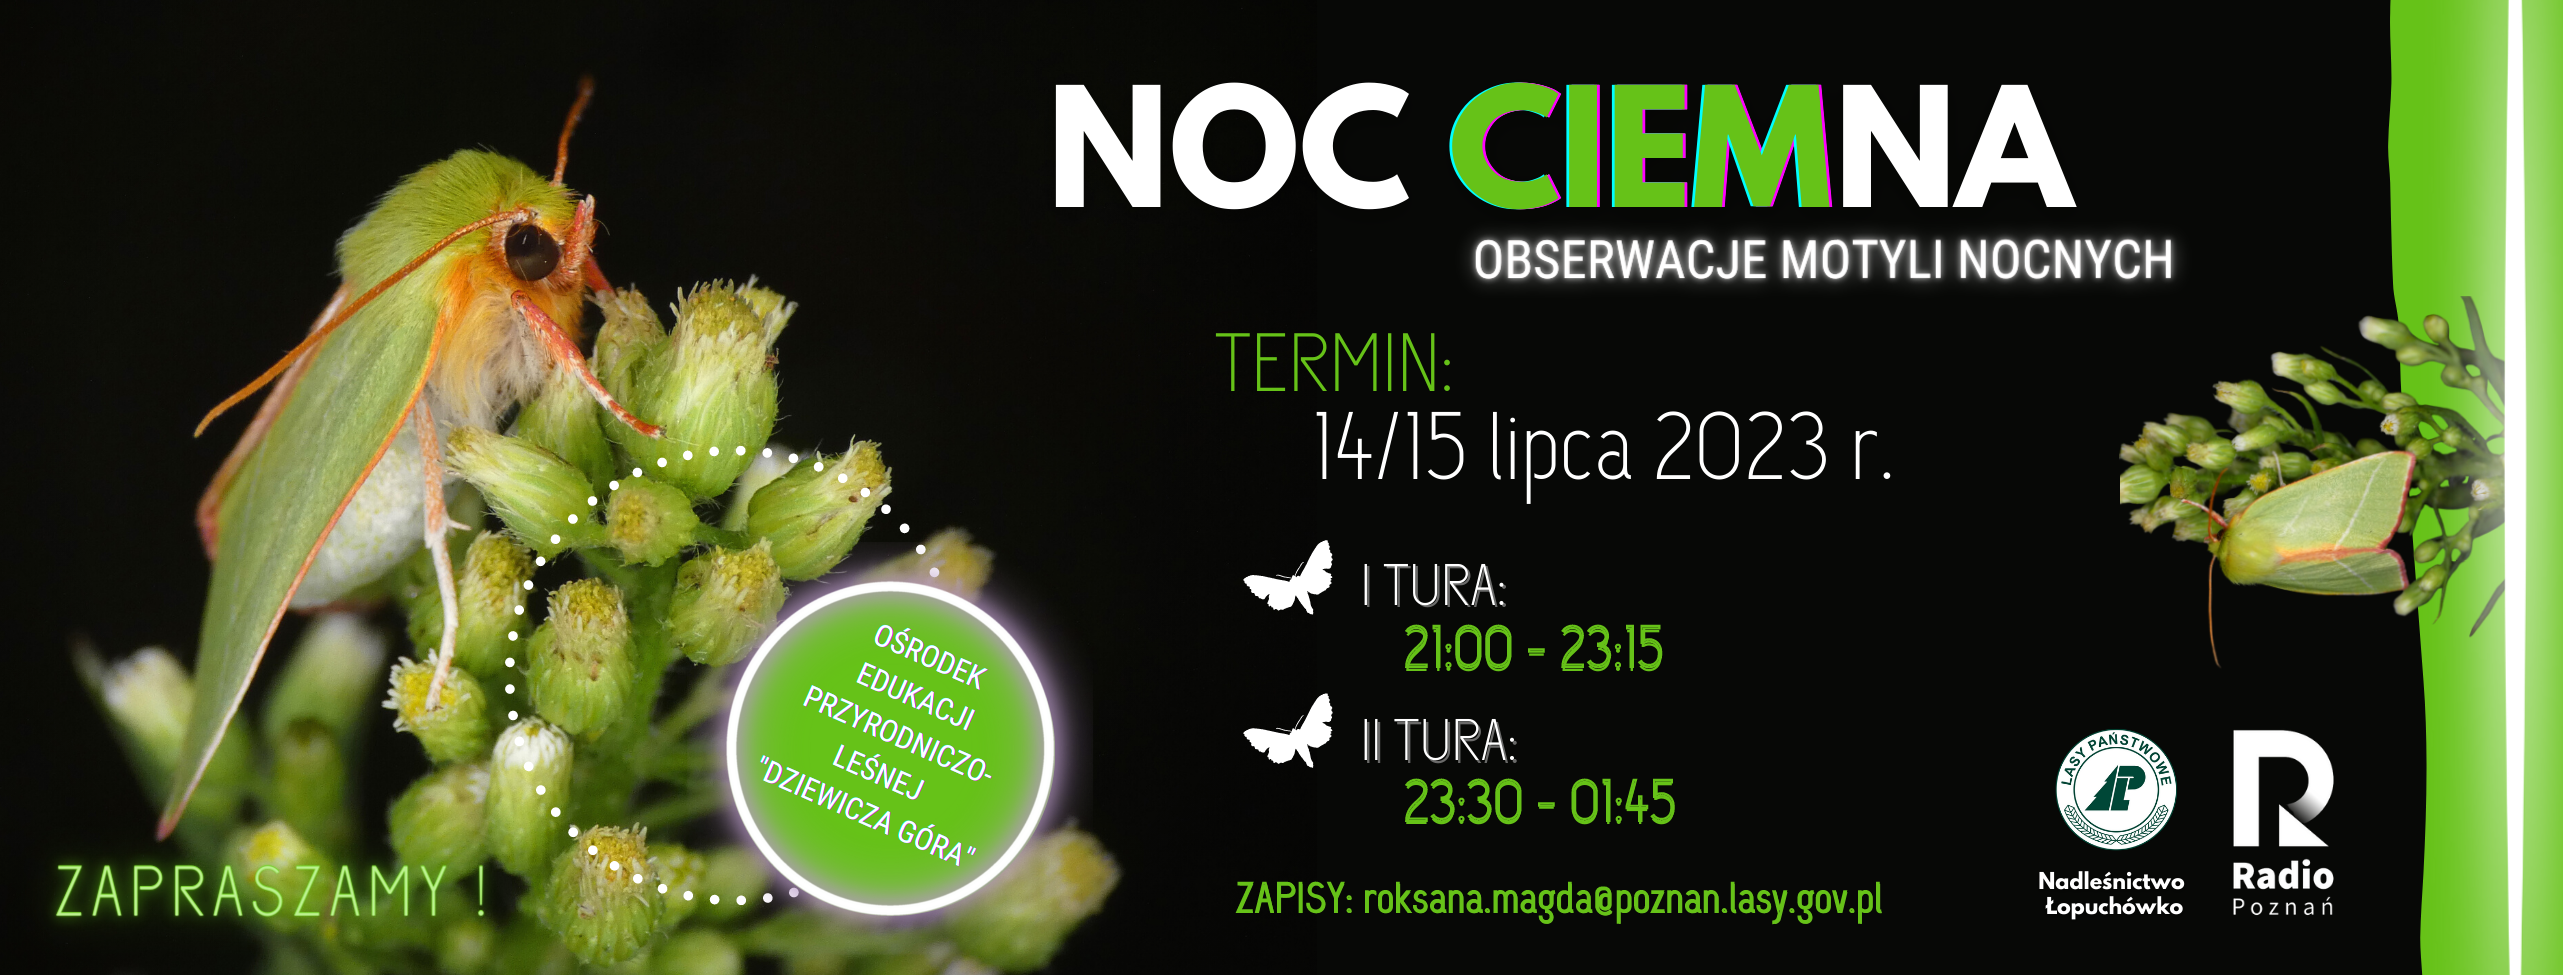 Grafika przedstawia plakat promujący wydarzenie NOC CIEMna. Autor: P. Kaźmierczak